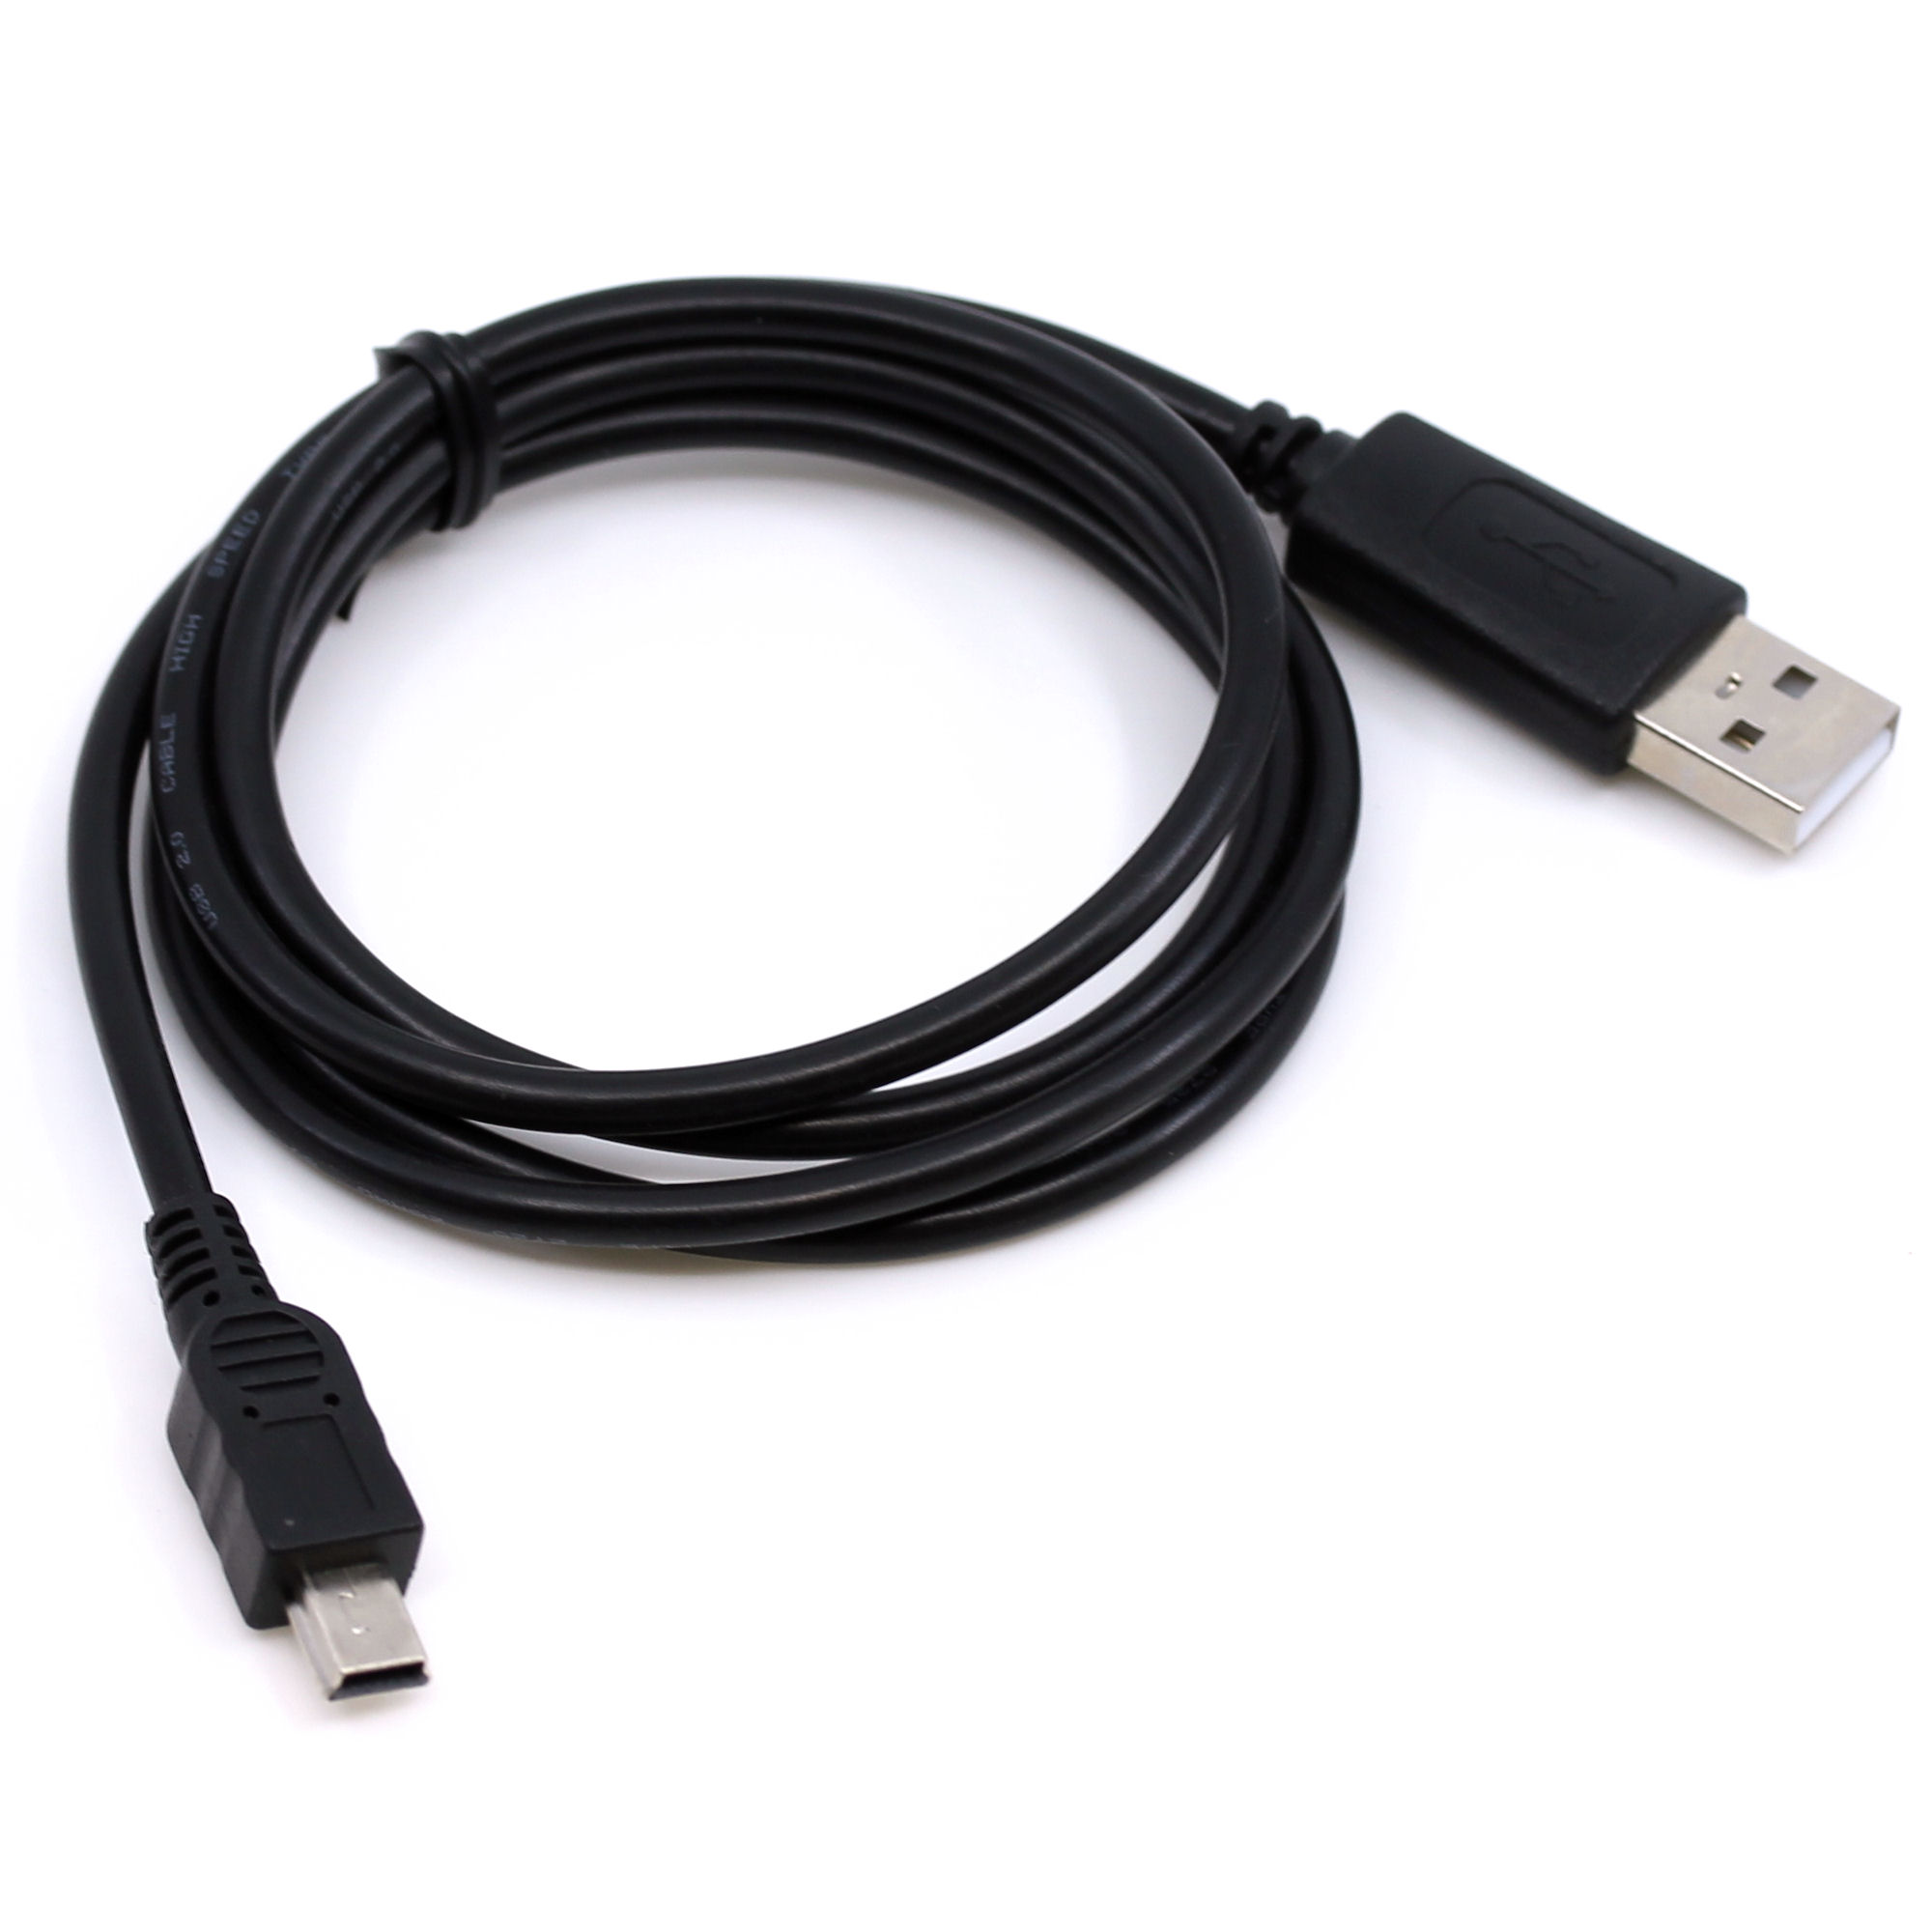 USB Datenkabel für Olympus Camedia C5050 Zoom, C5060 Zoom, C520, C550, C720 Ultra Zoom